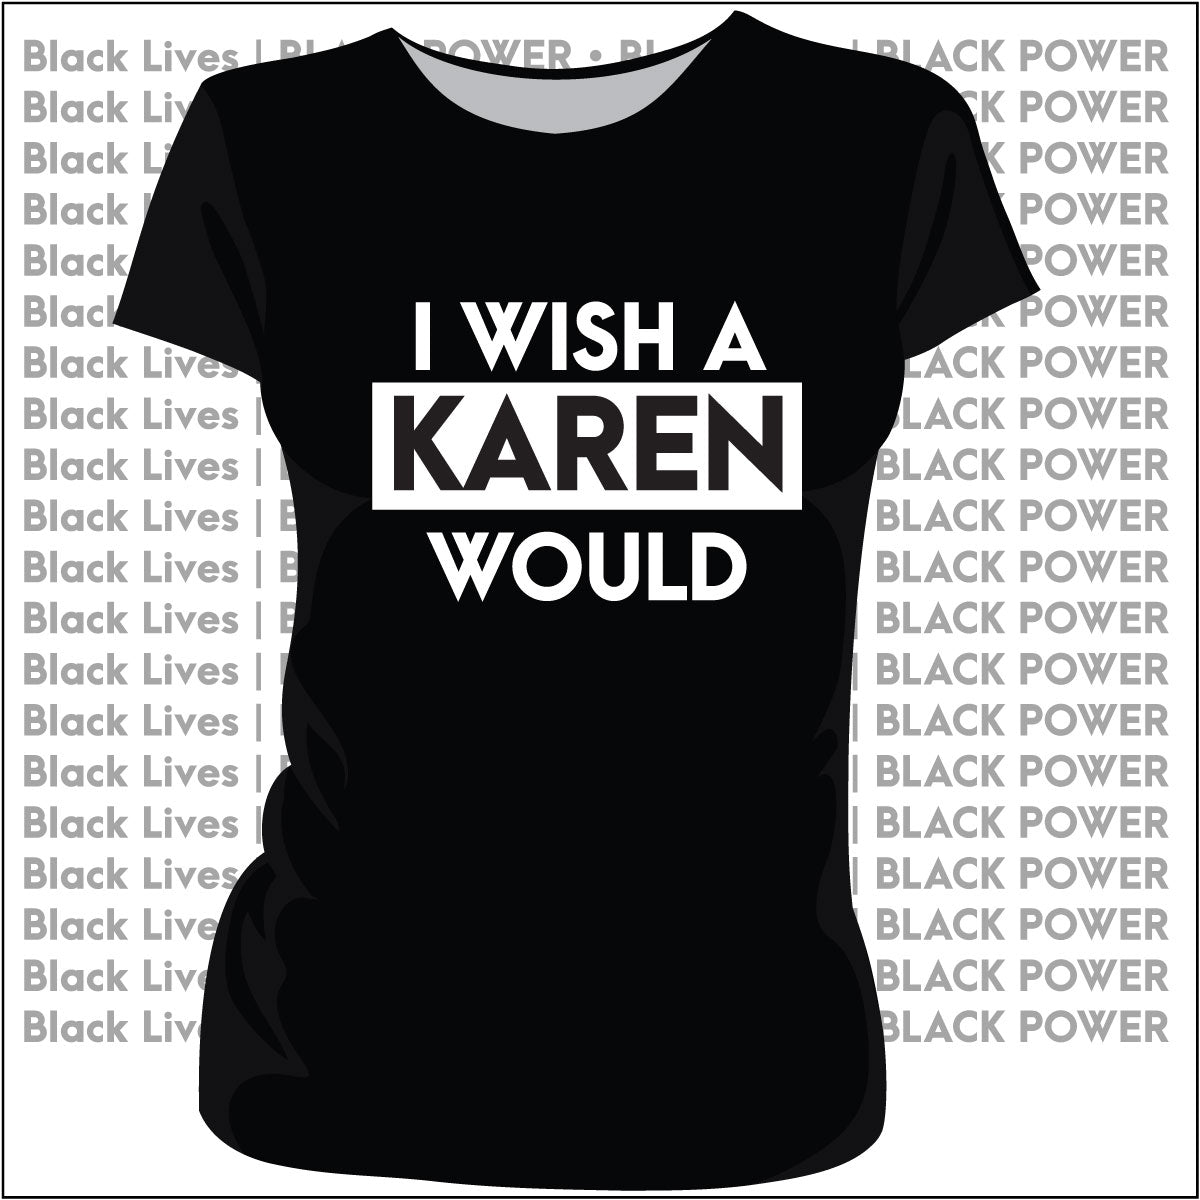 Wish a KAREN WOULD Black  | Ladies & Unisex  Tees | JULY